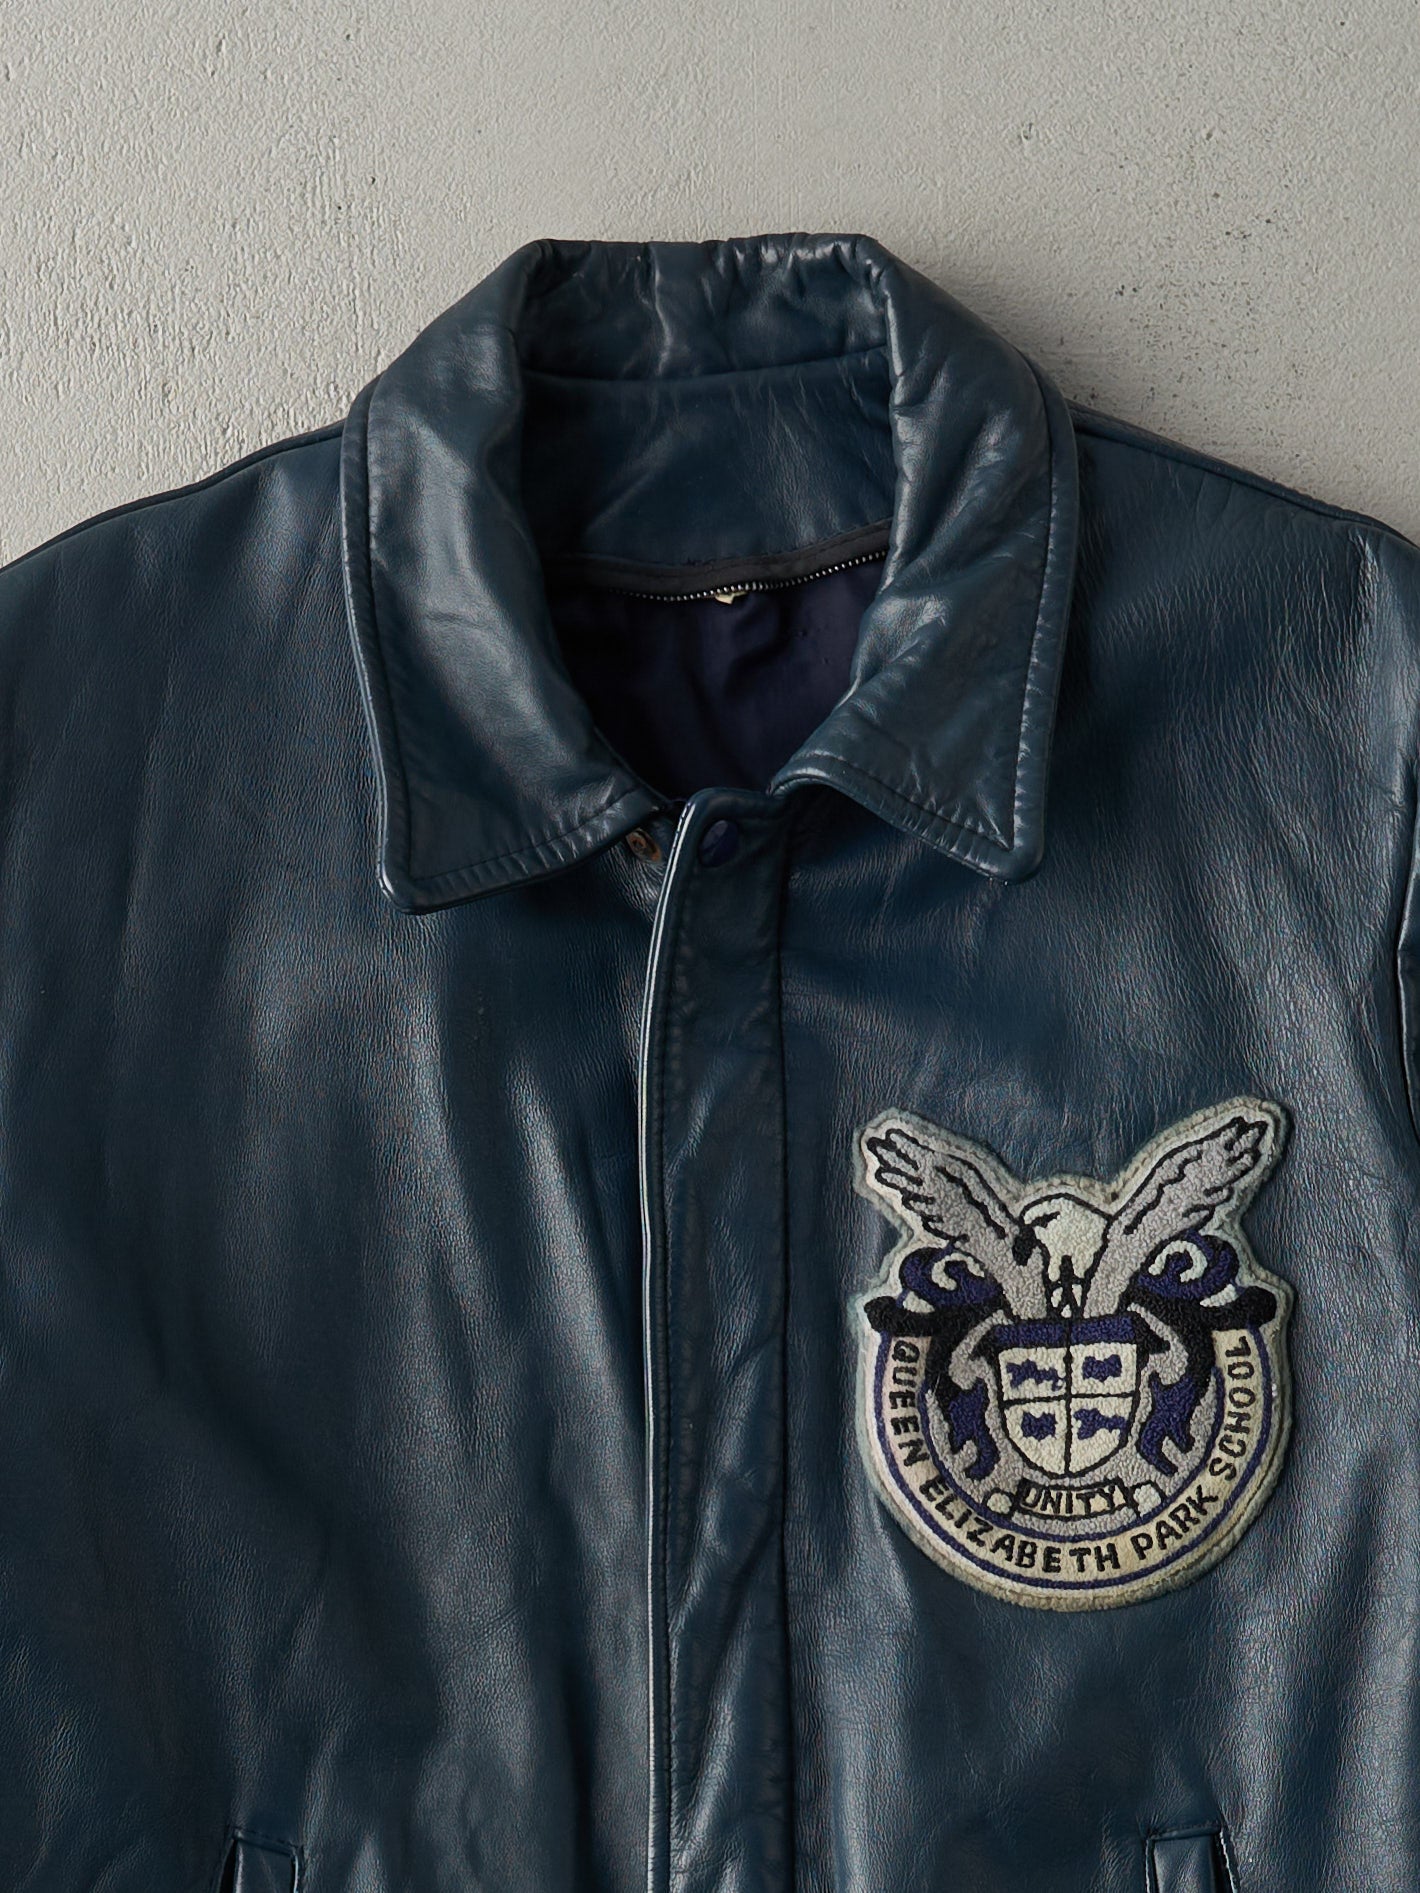 Vintage 70s Blue Queen Elizabeth Park School Emblem Leather Jacket (M)